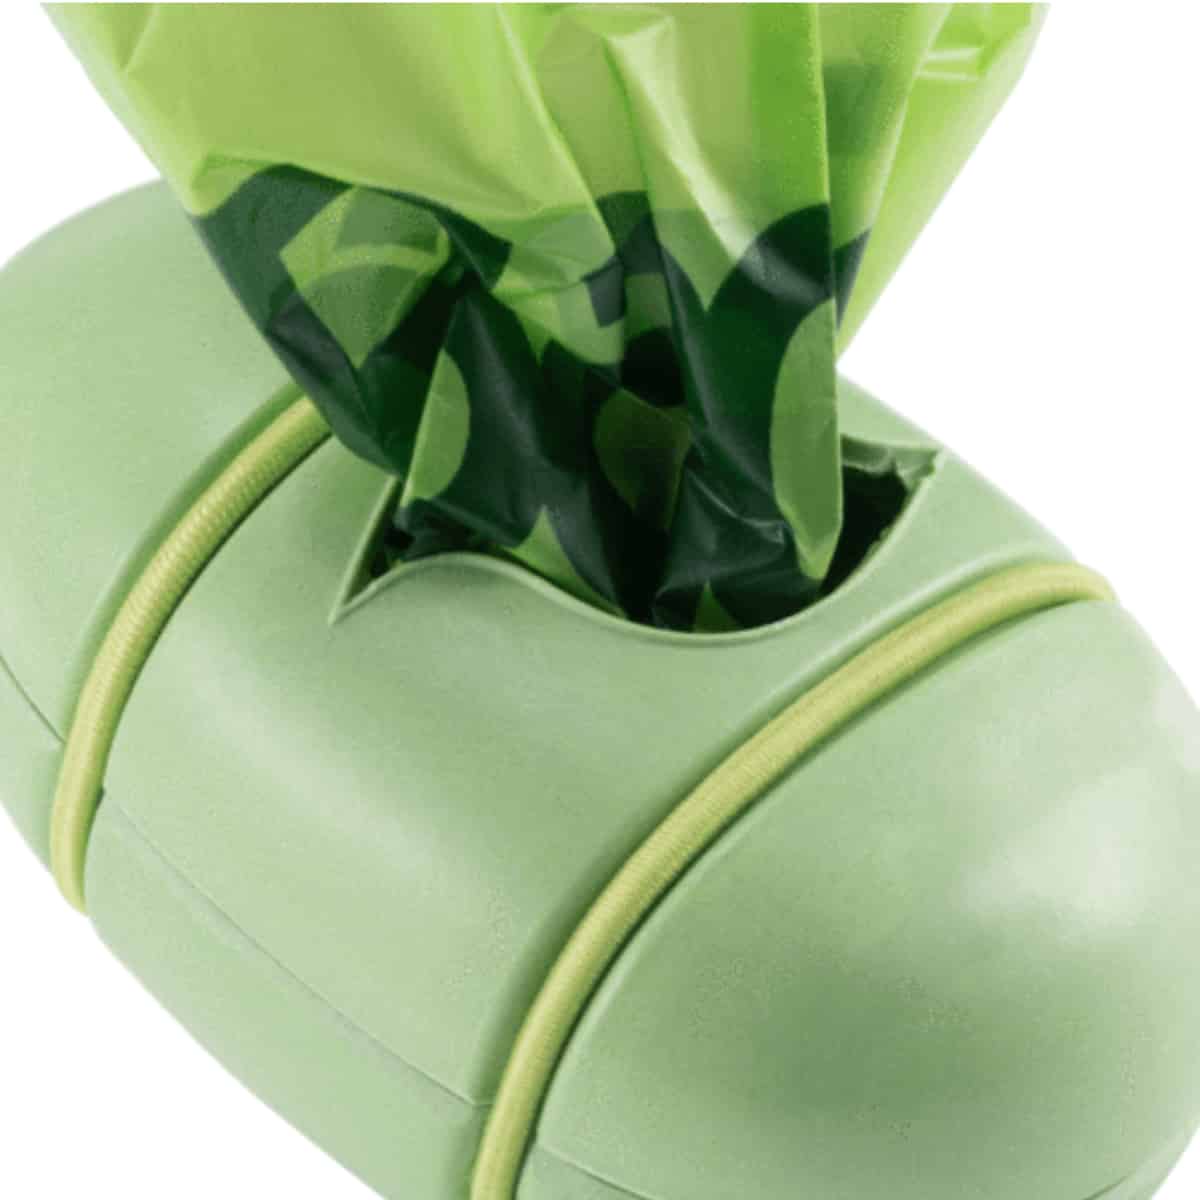 Beco Pocket Poop Bag Dispenser - Green, with bags